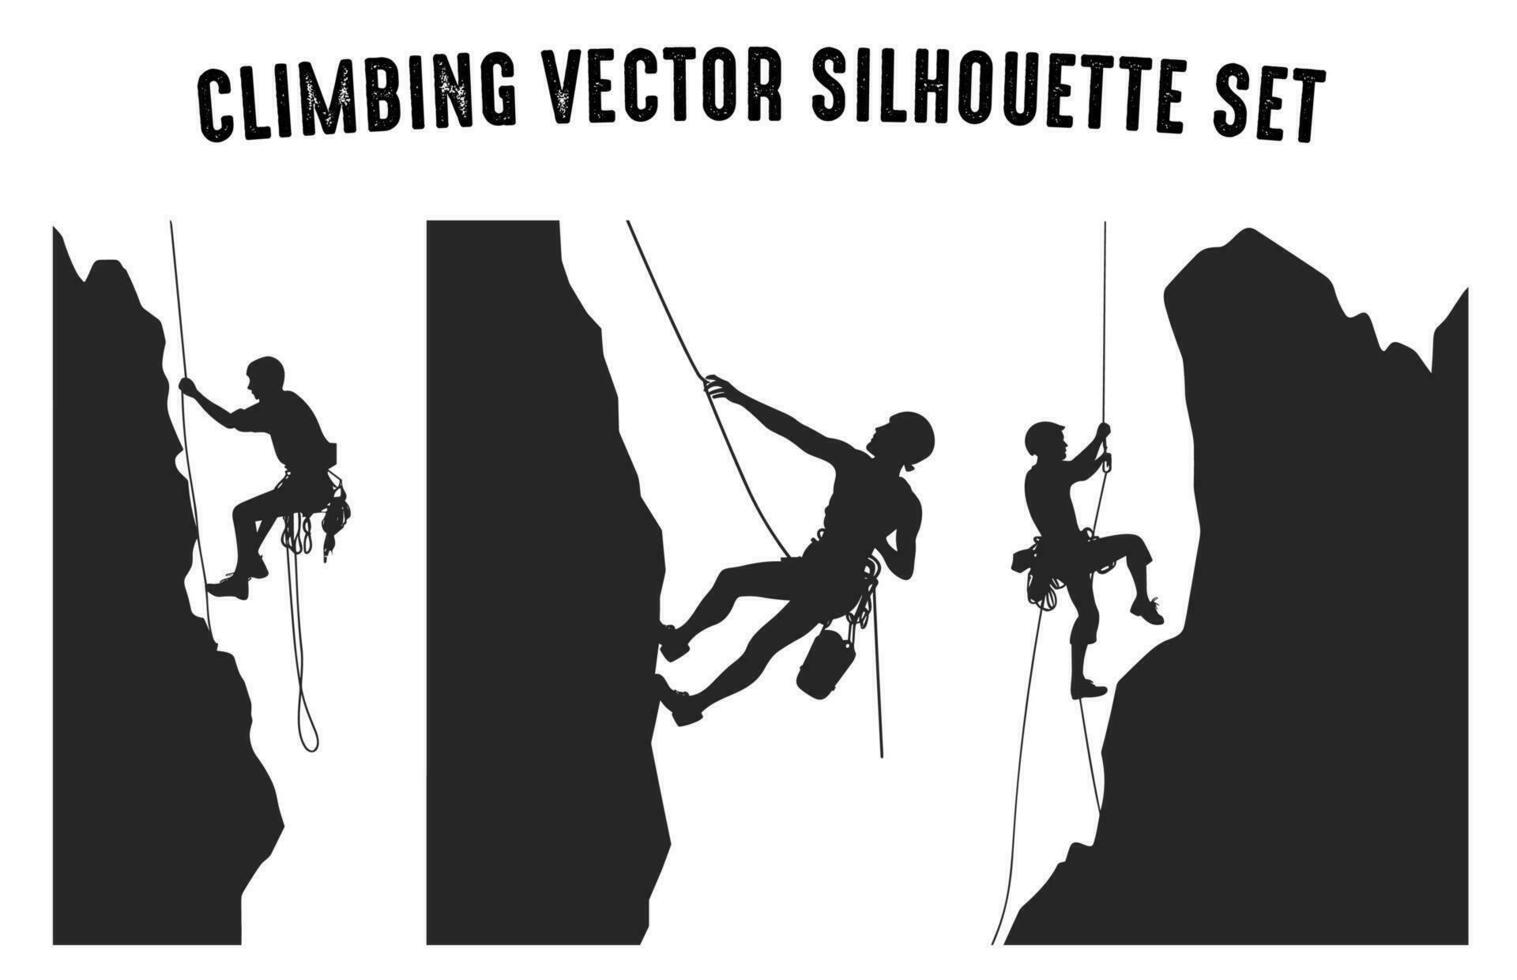 trepador vector silueta clipart manojo, montaña alpinismo siluetas en diferente posa, rock trepador negro silueta conjunto